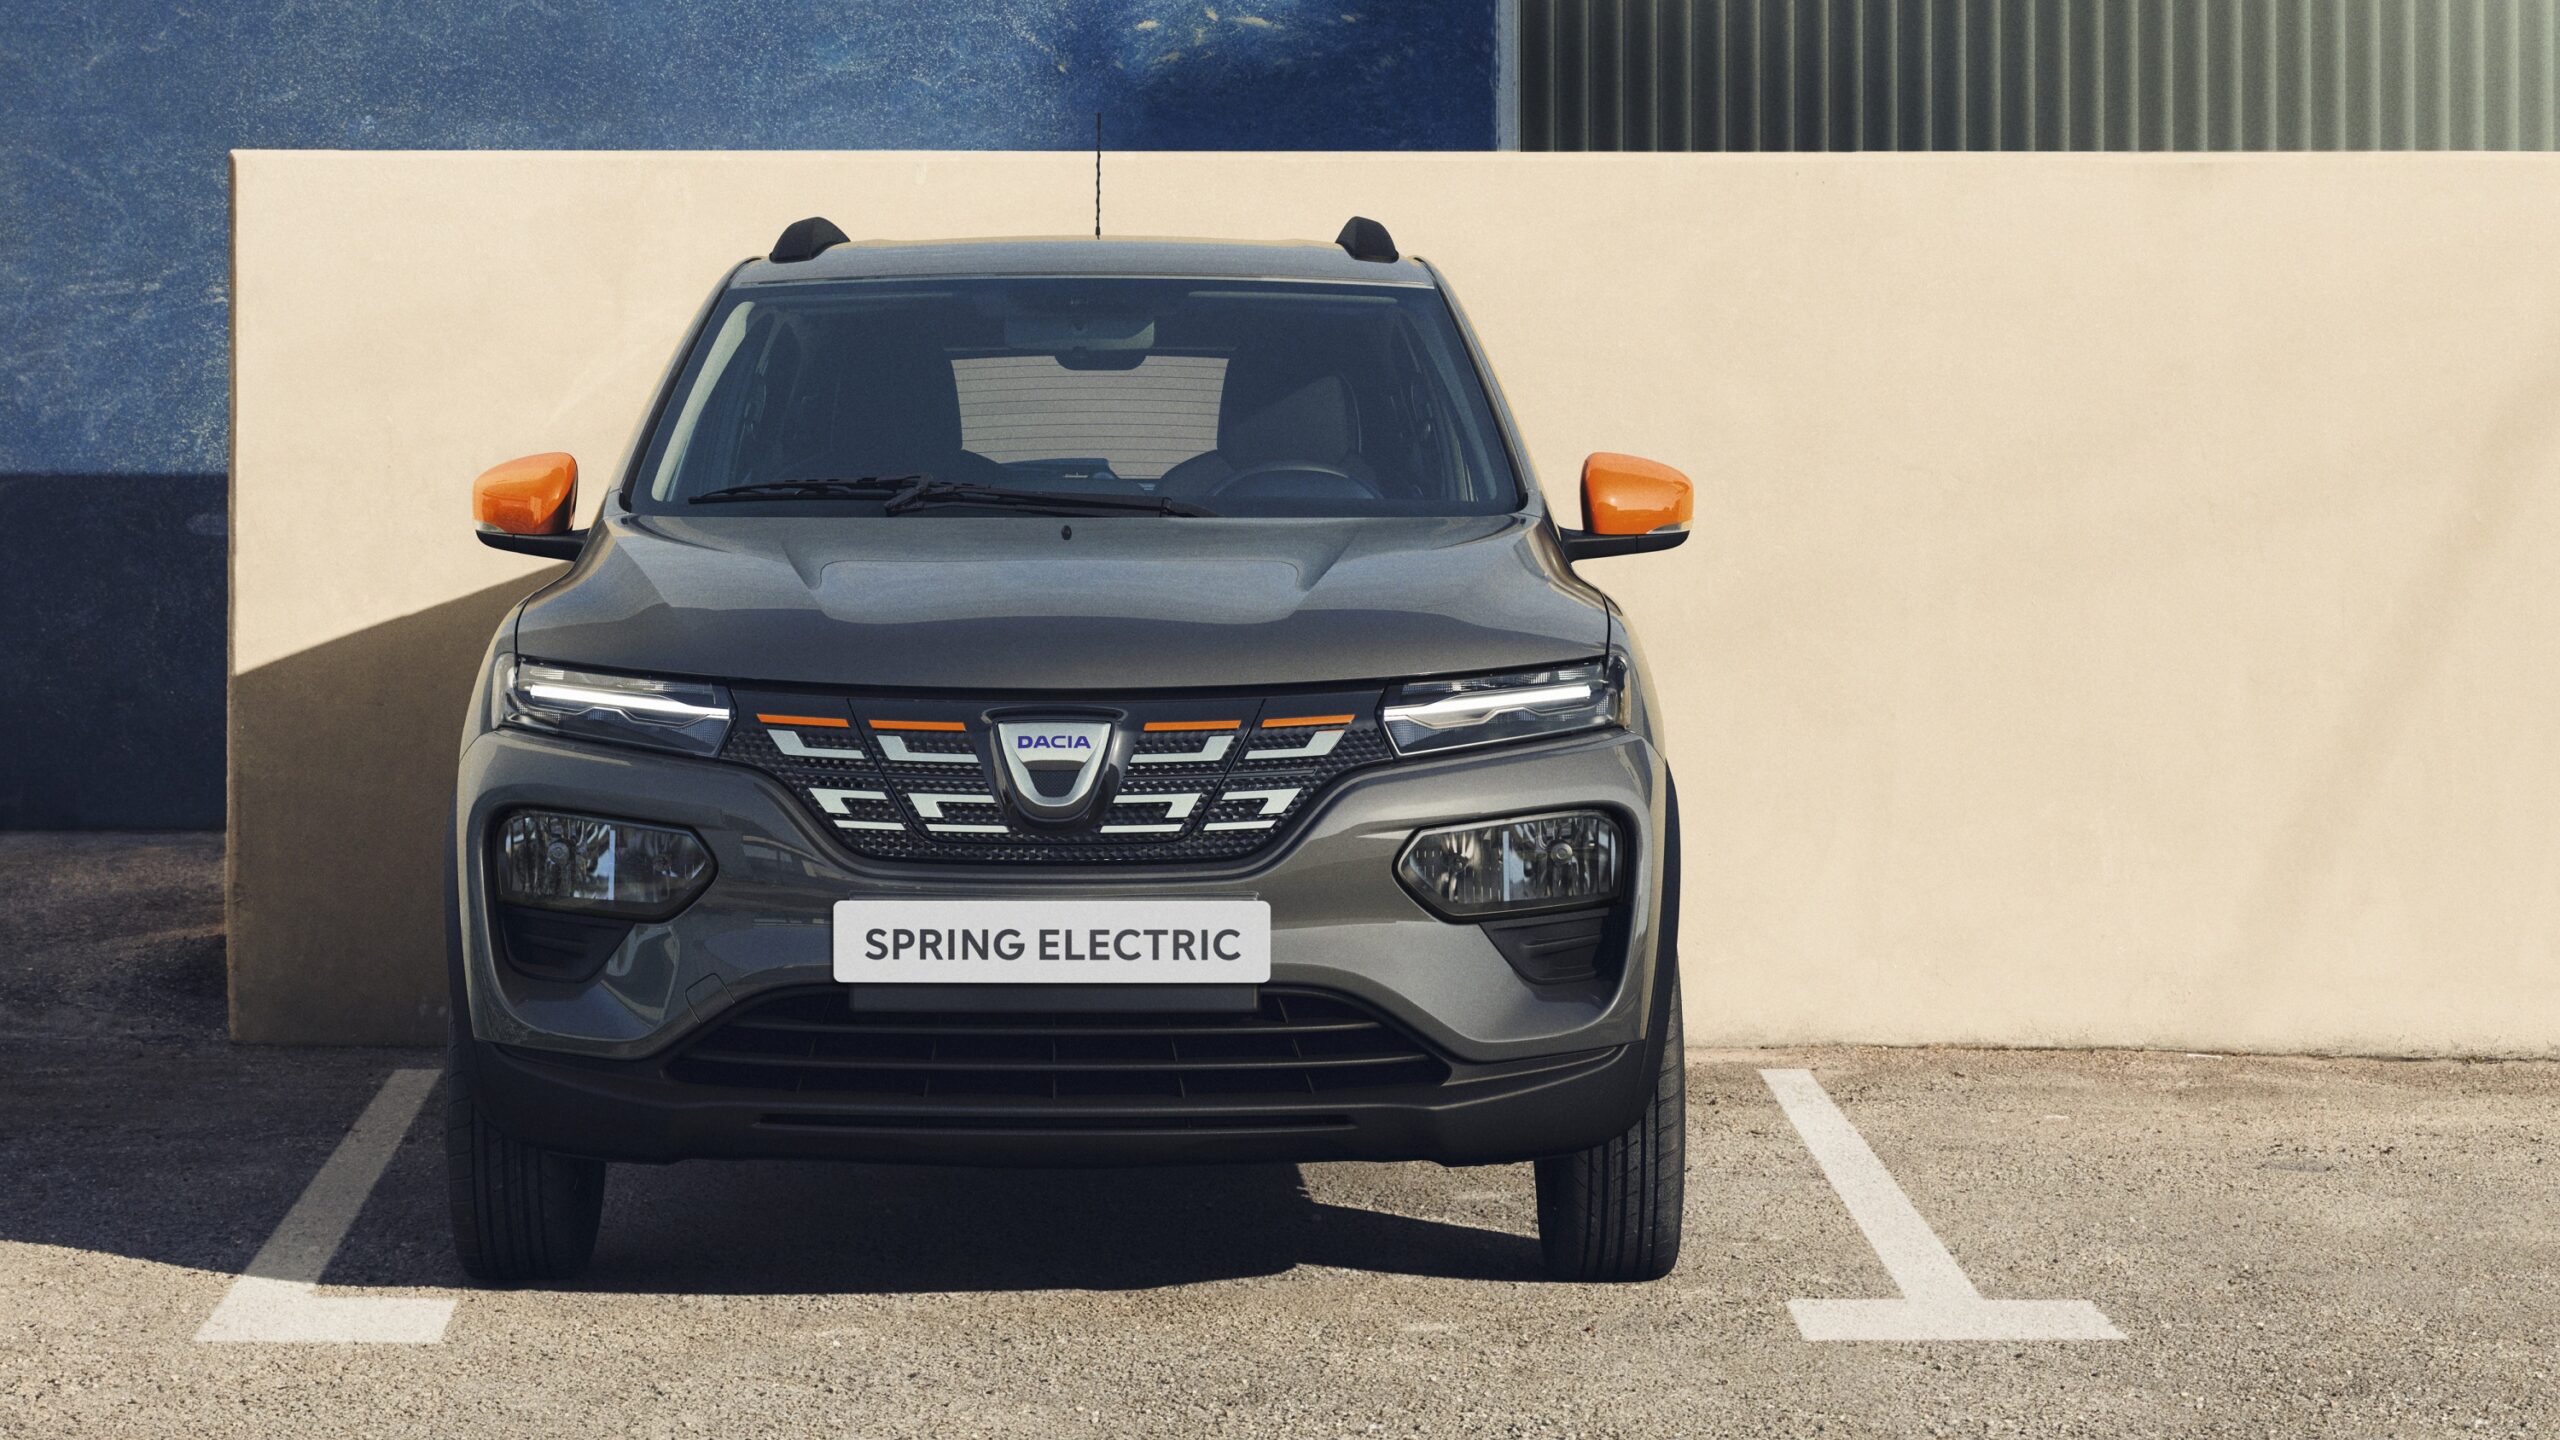 Nowa Dacia Spring Electric - uniwersalne, elektryczne auto na każdą kieszeń?